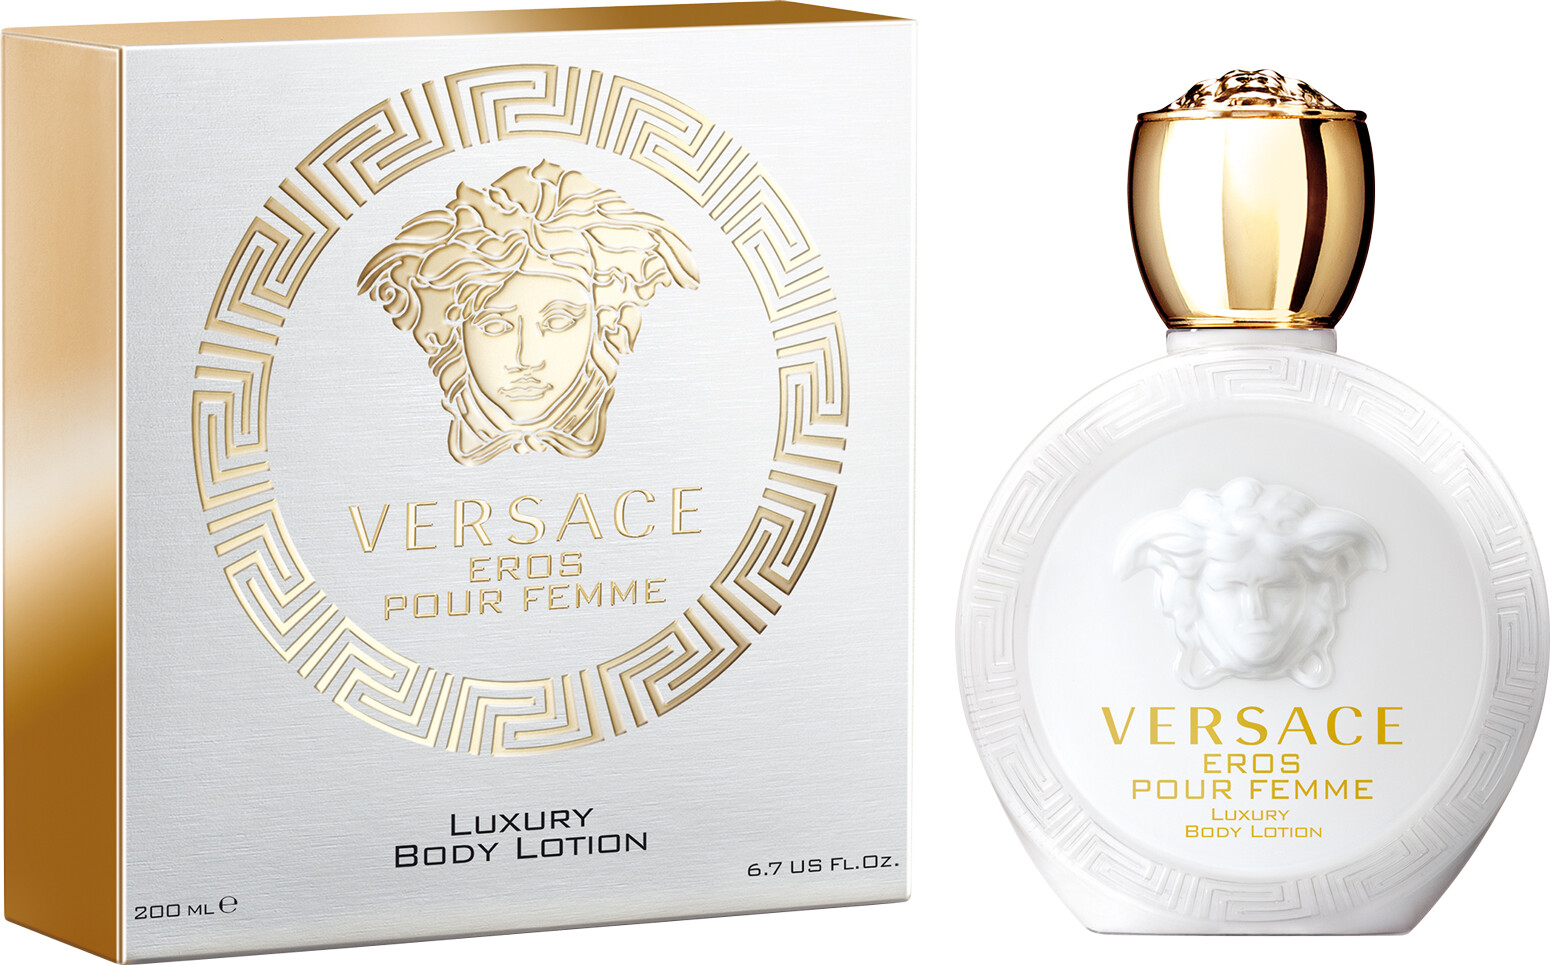 Versace Eros Pour Femme Luxury Body Lotion